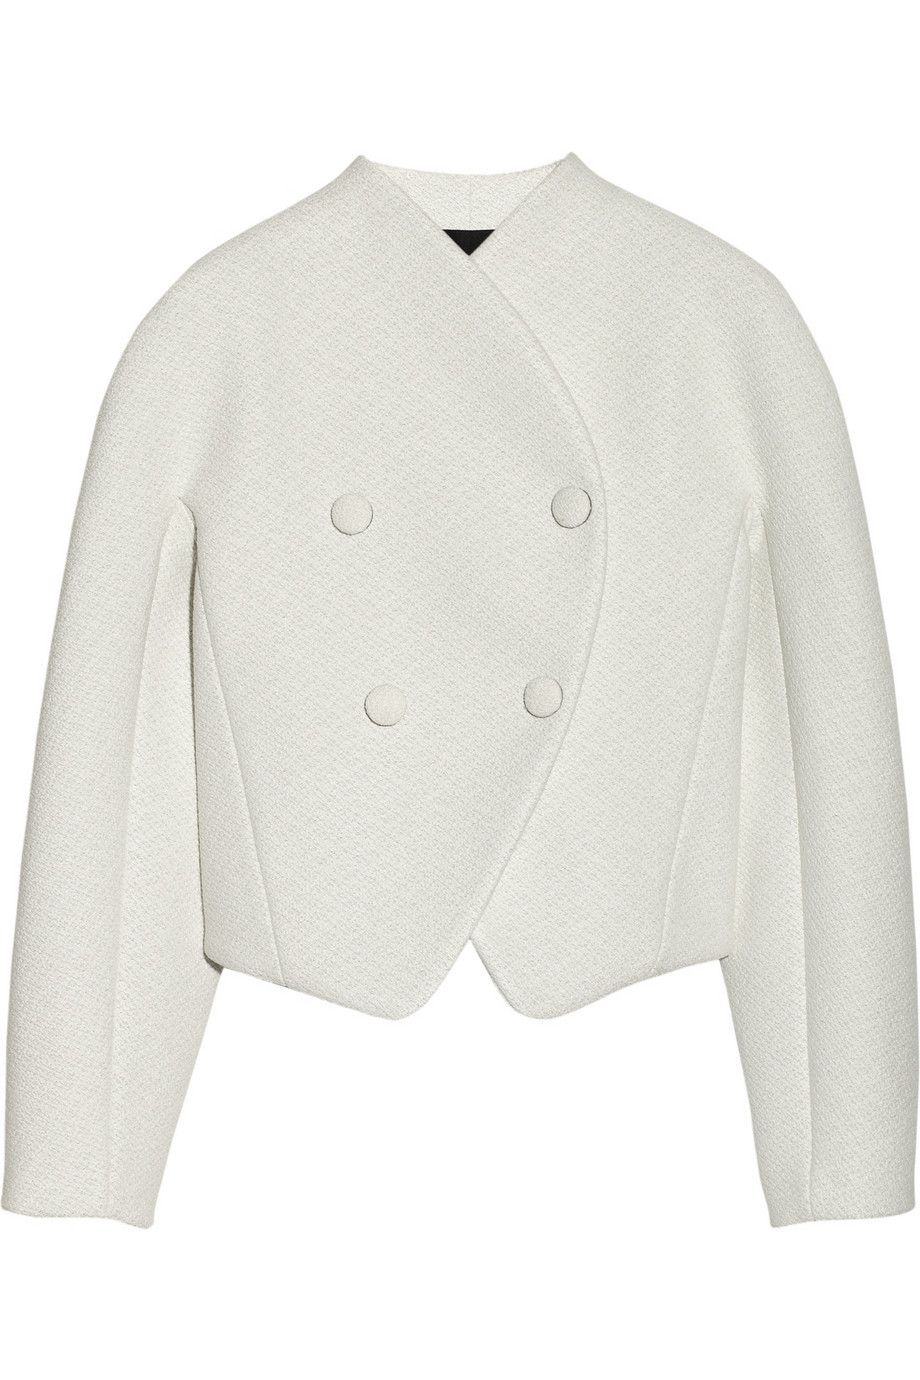 Product, Collar, Sleeve, Textile, White, Fashion, Grey, Blazer, Sweater, Button, 